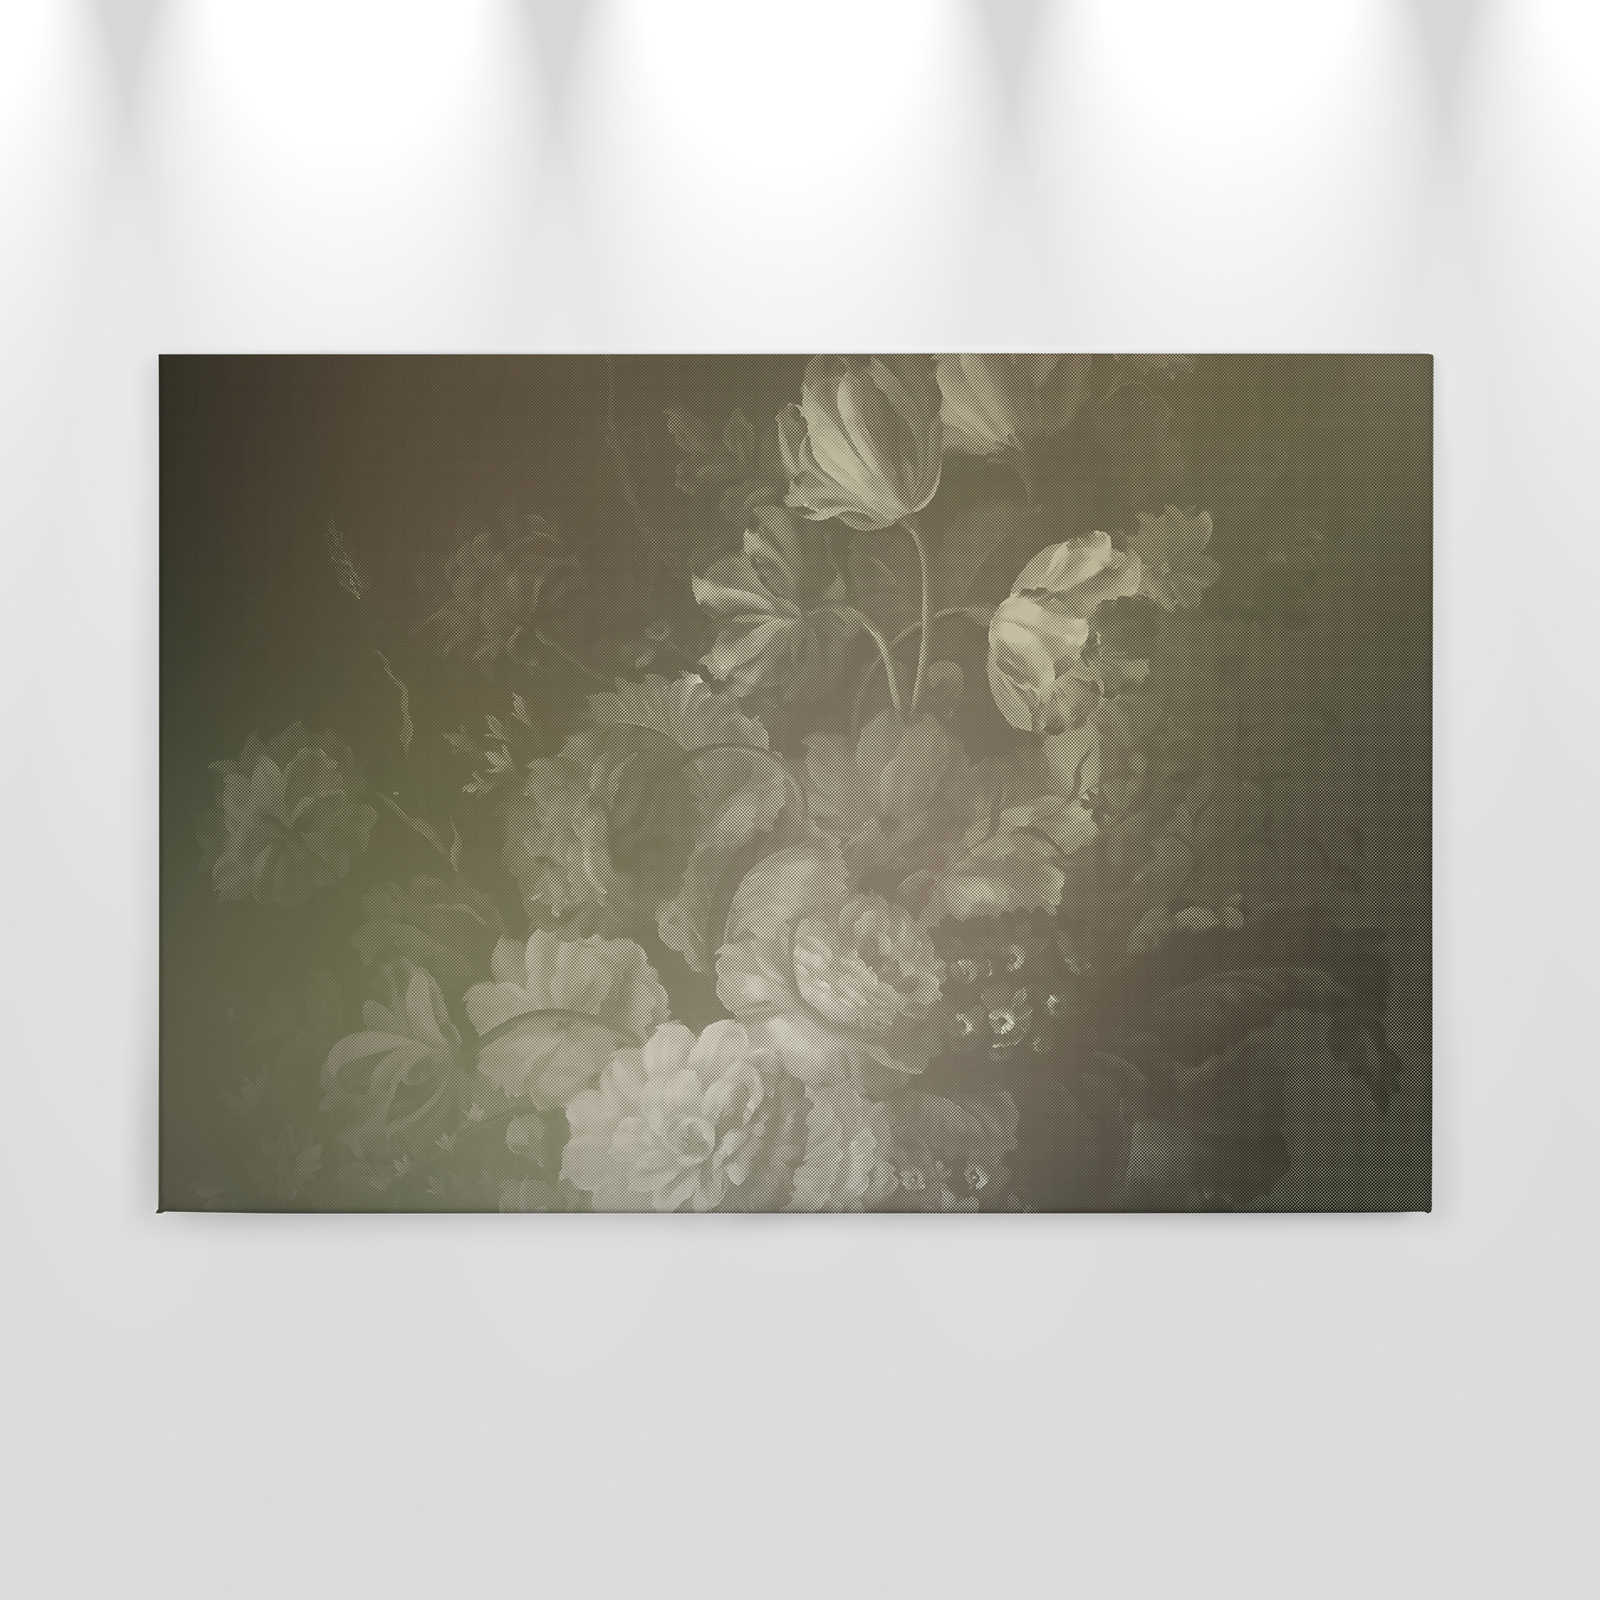             Pastello olandese 4 - Quadro su tela con bouquet artistico in stile olandese - 0,90 m x 0,60 m
        